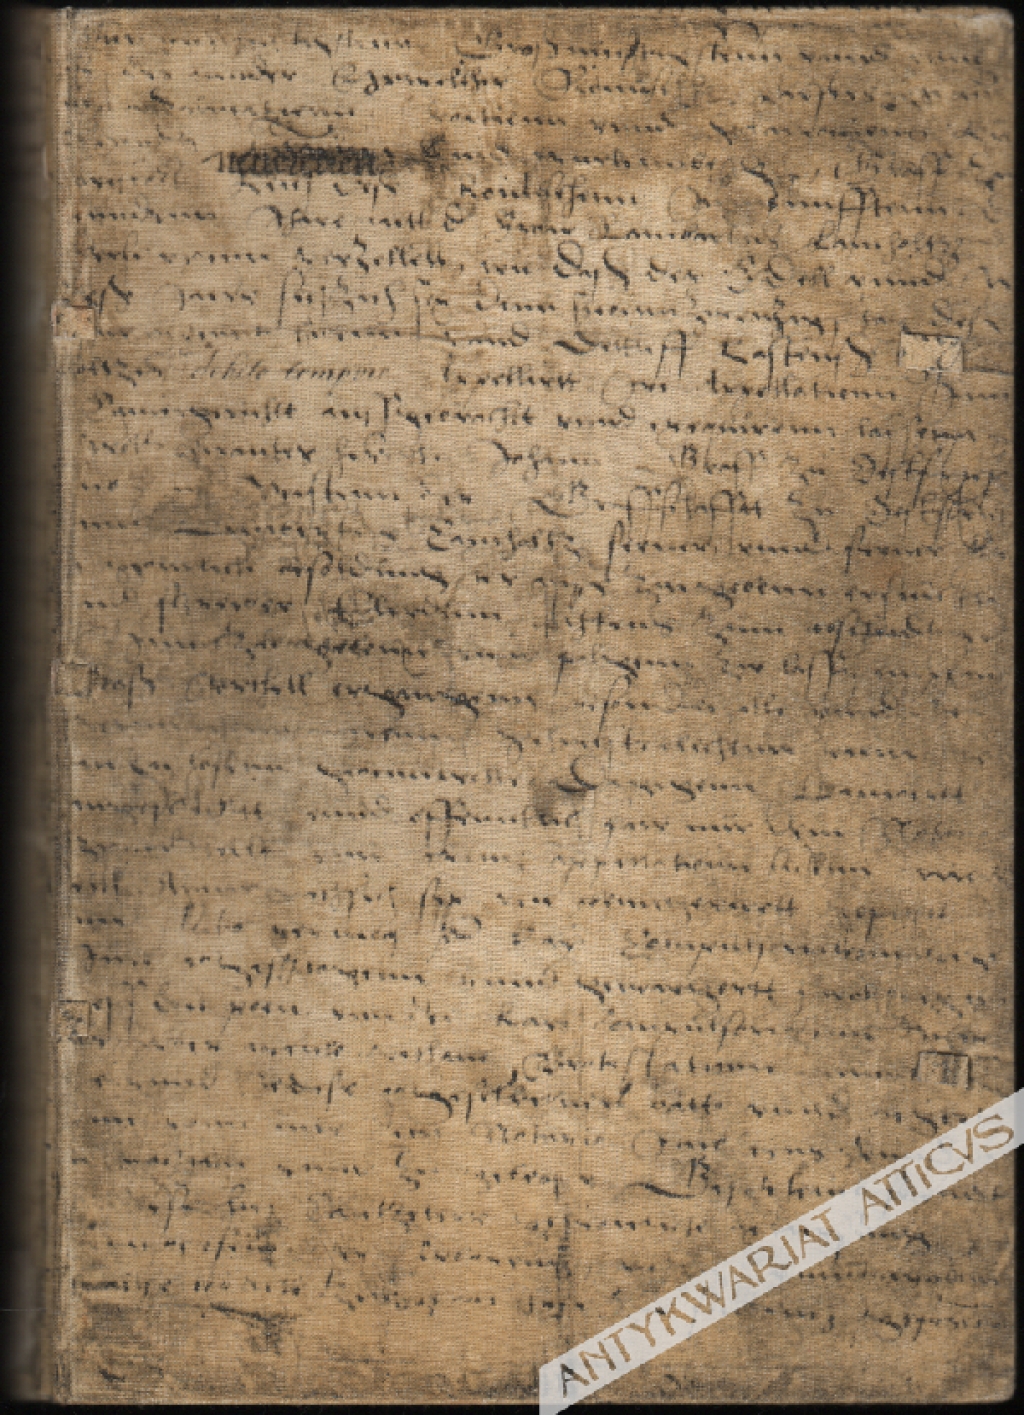 De revolutionibus [O obrotach], faksymile rękopisu